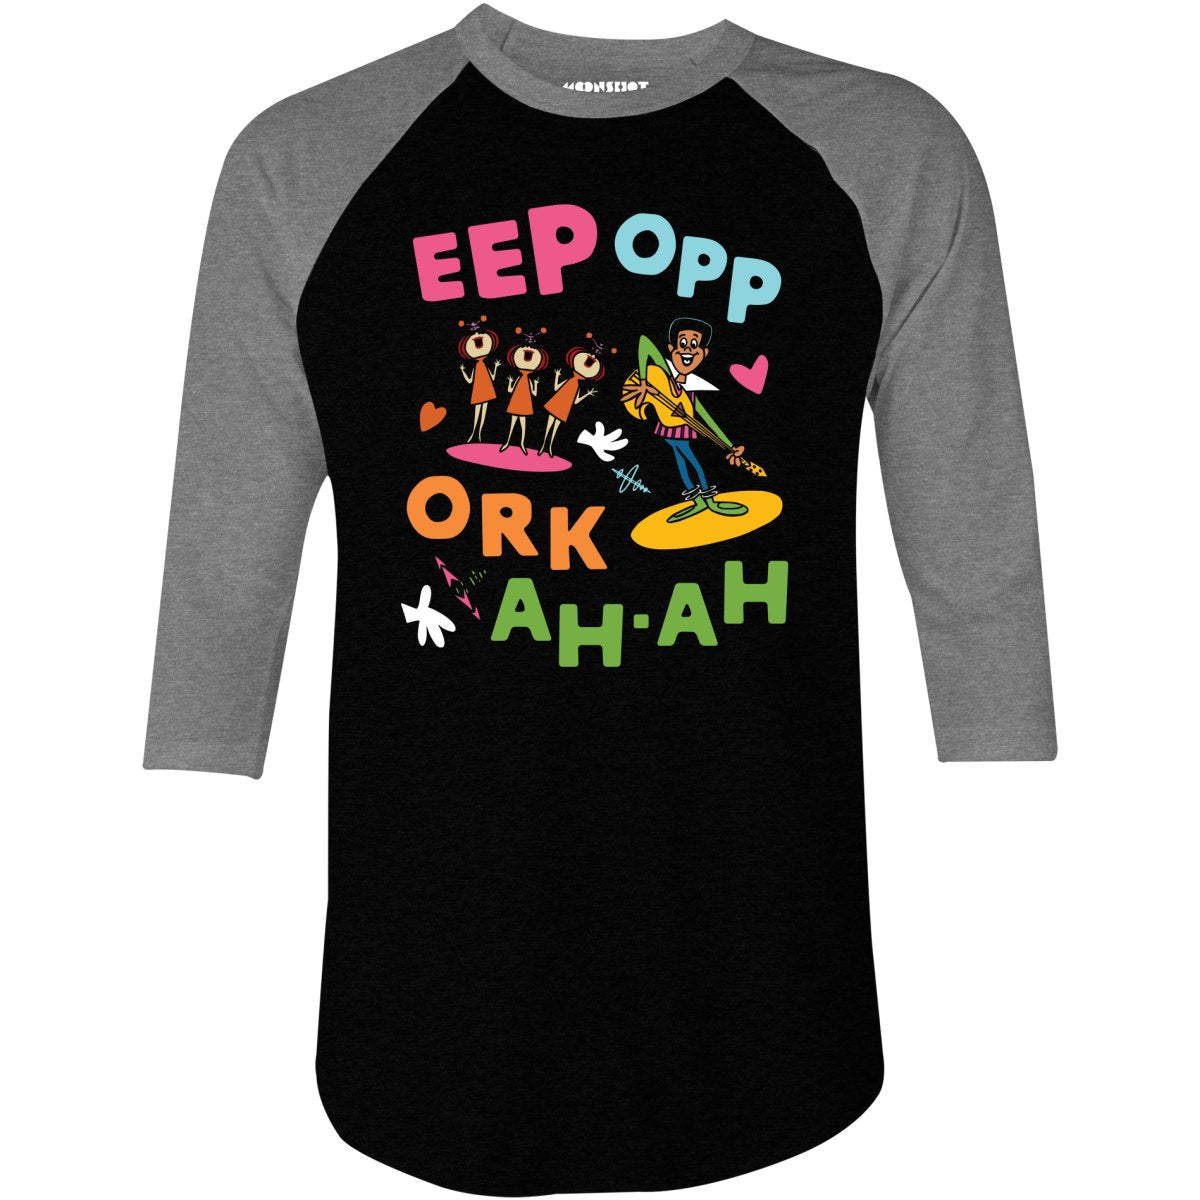 Eep Opp Ork Ah Ah - 3/4 Sleeve Raglan T-Shirt